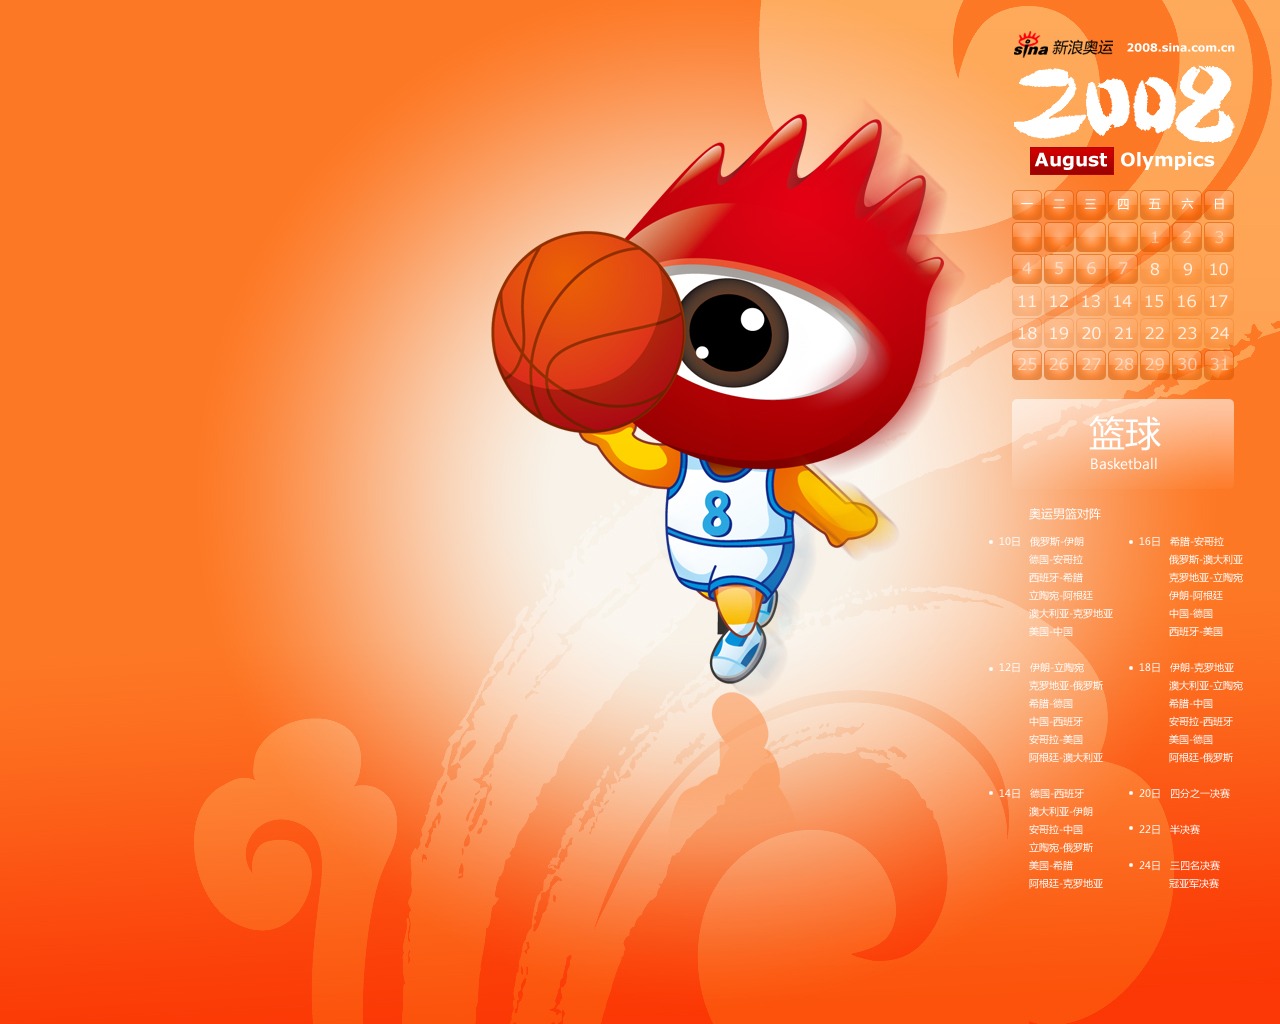 Sina Olympics Series Wallpaper #3 - 1280x1024